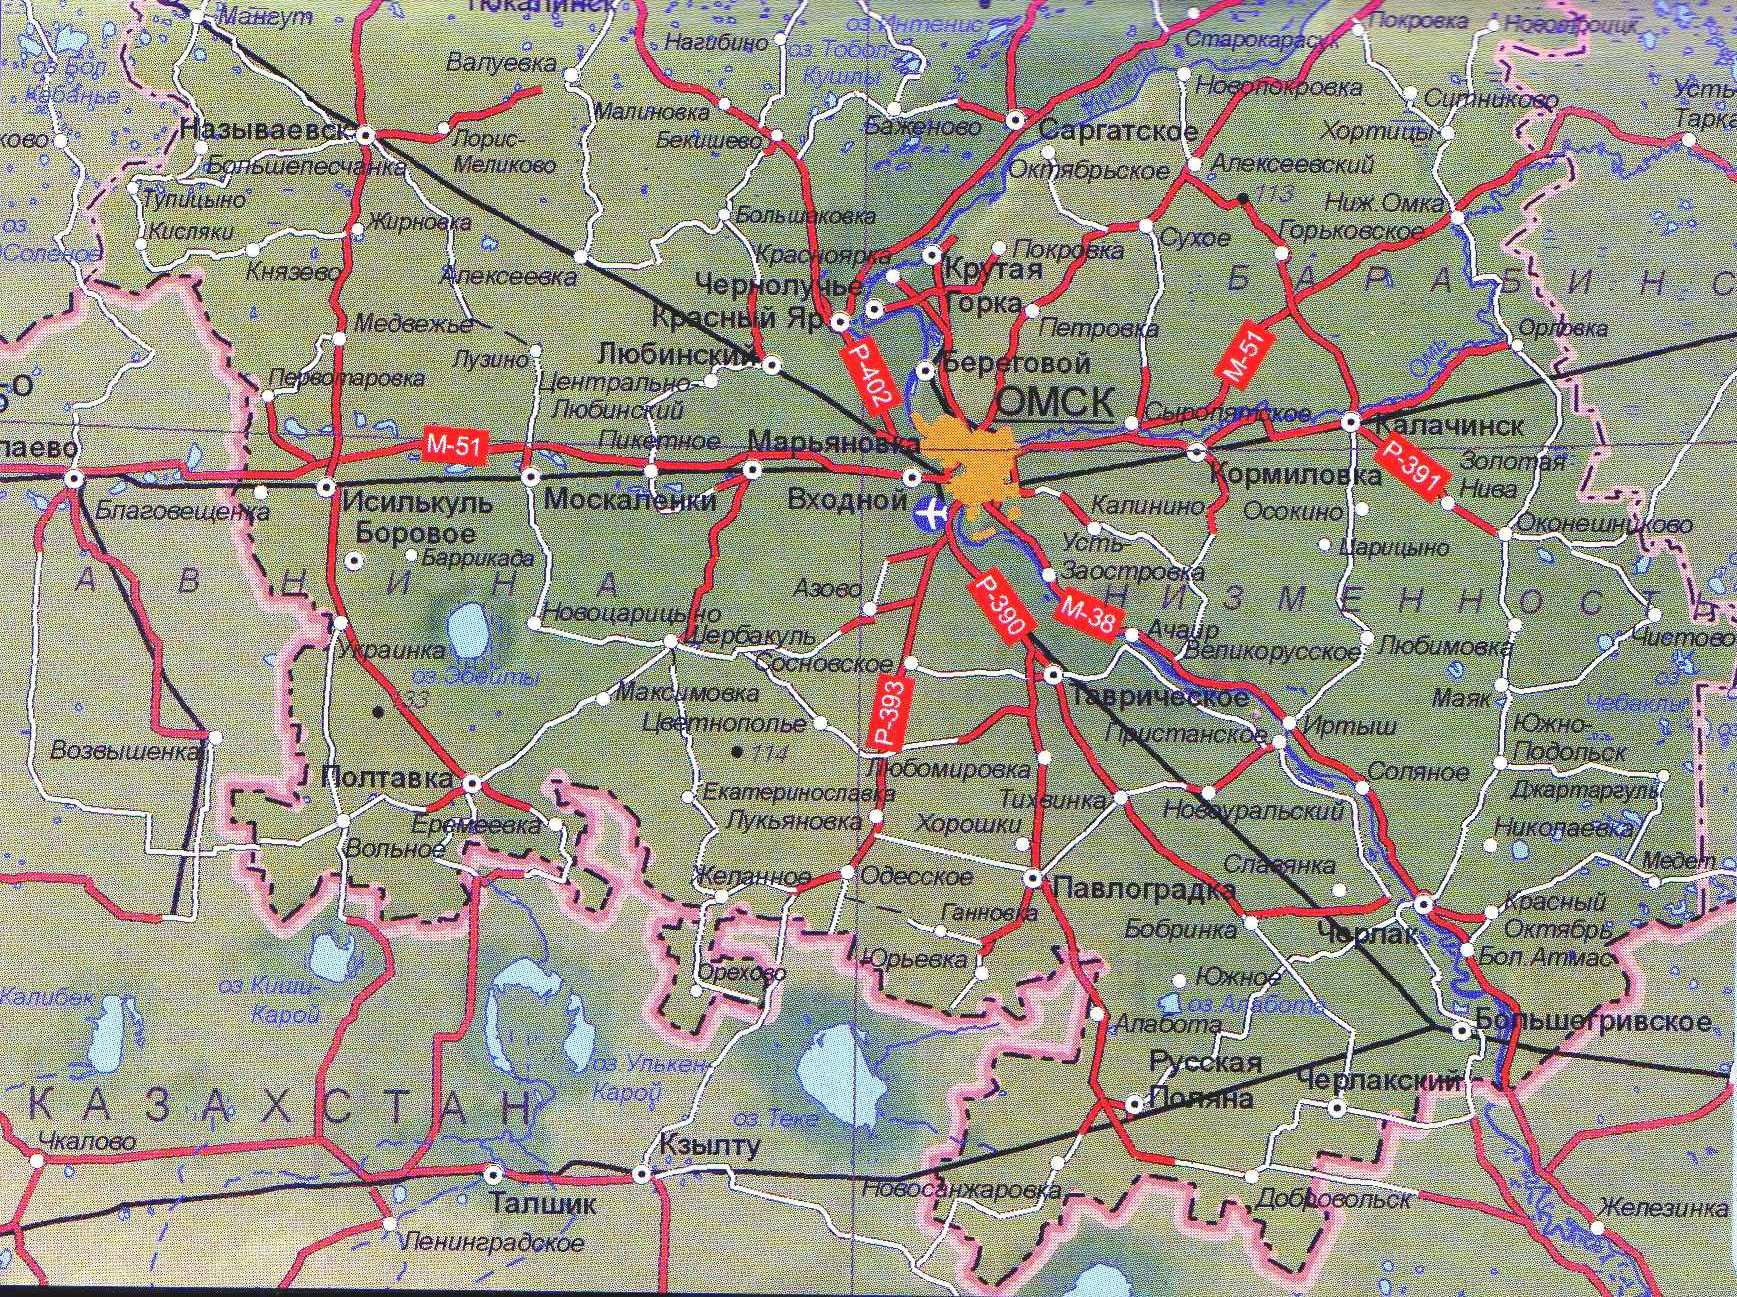 Часть карты омской области.jpg